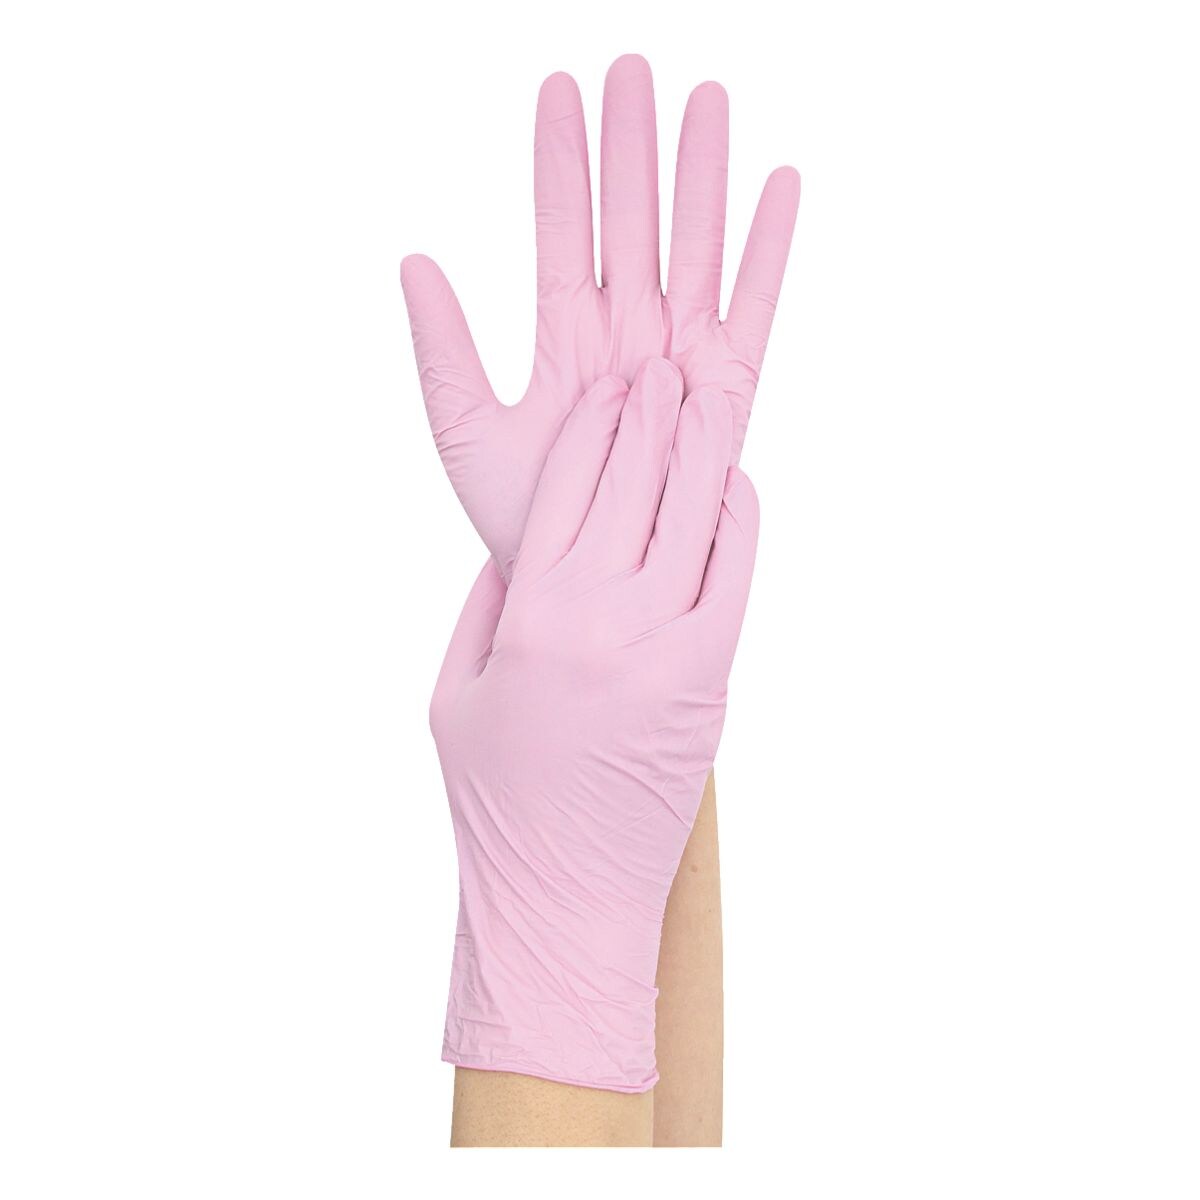 100 Franz Mensch gants jetables Safe Light nitrile, Taille S rose vif